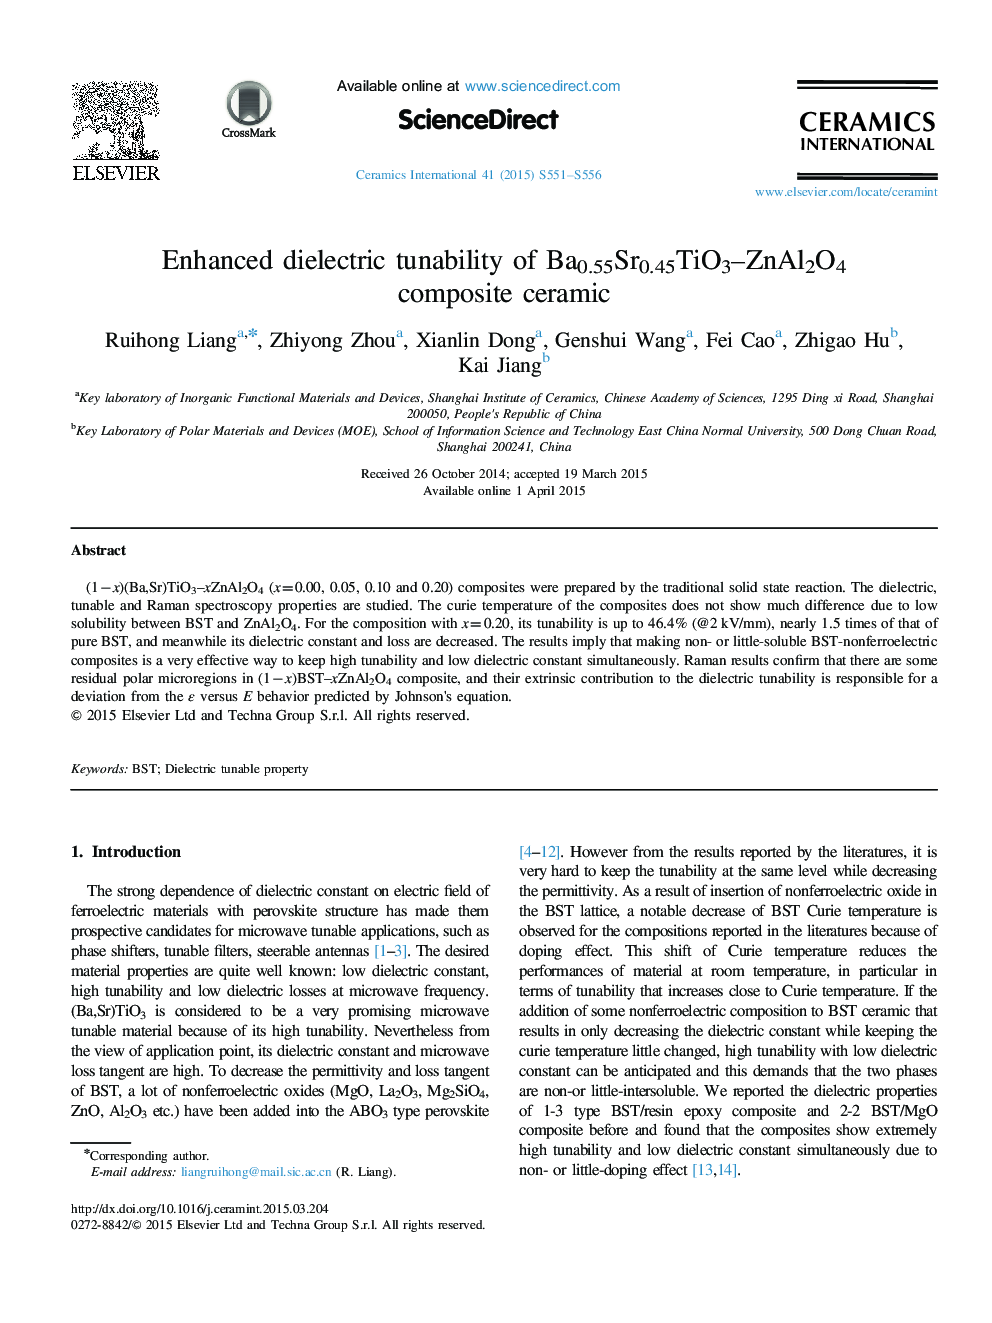 Enhanced dielectric tunability of Ba0.55Sr0.45TiO3–ZnAl2O4 composite ceramic